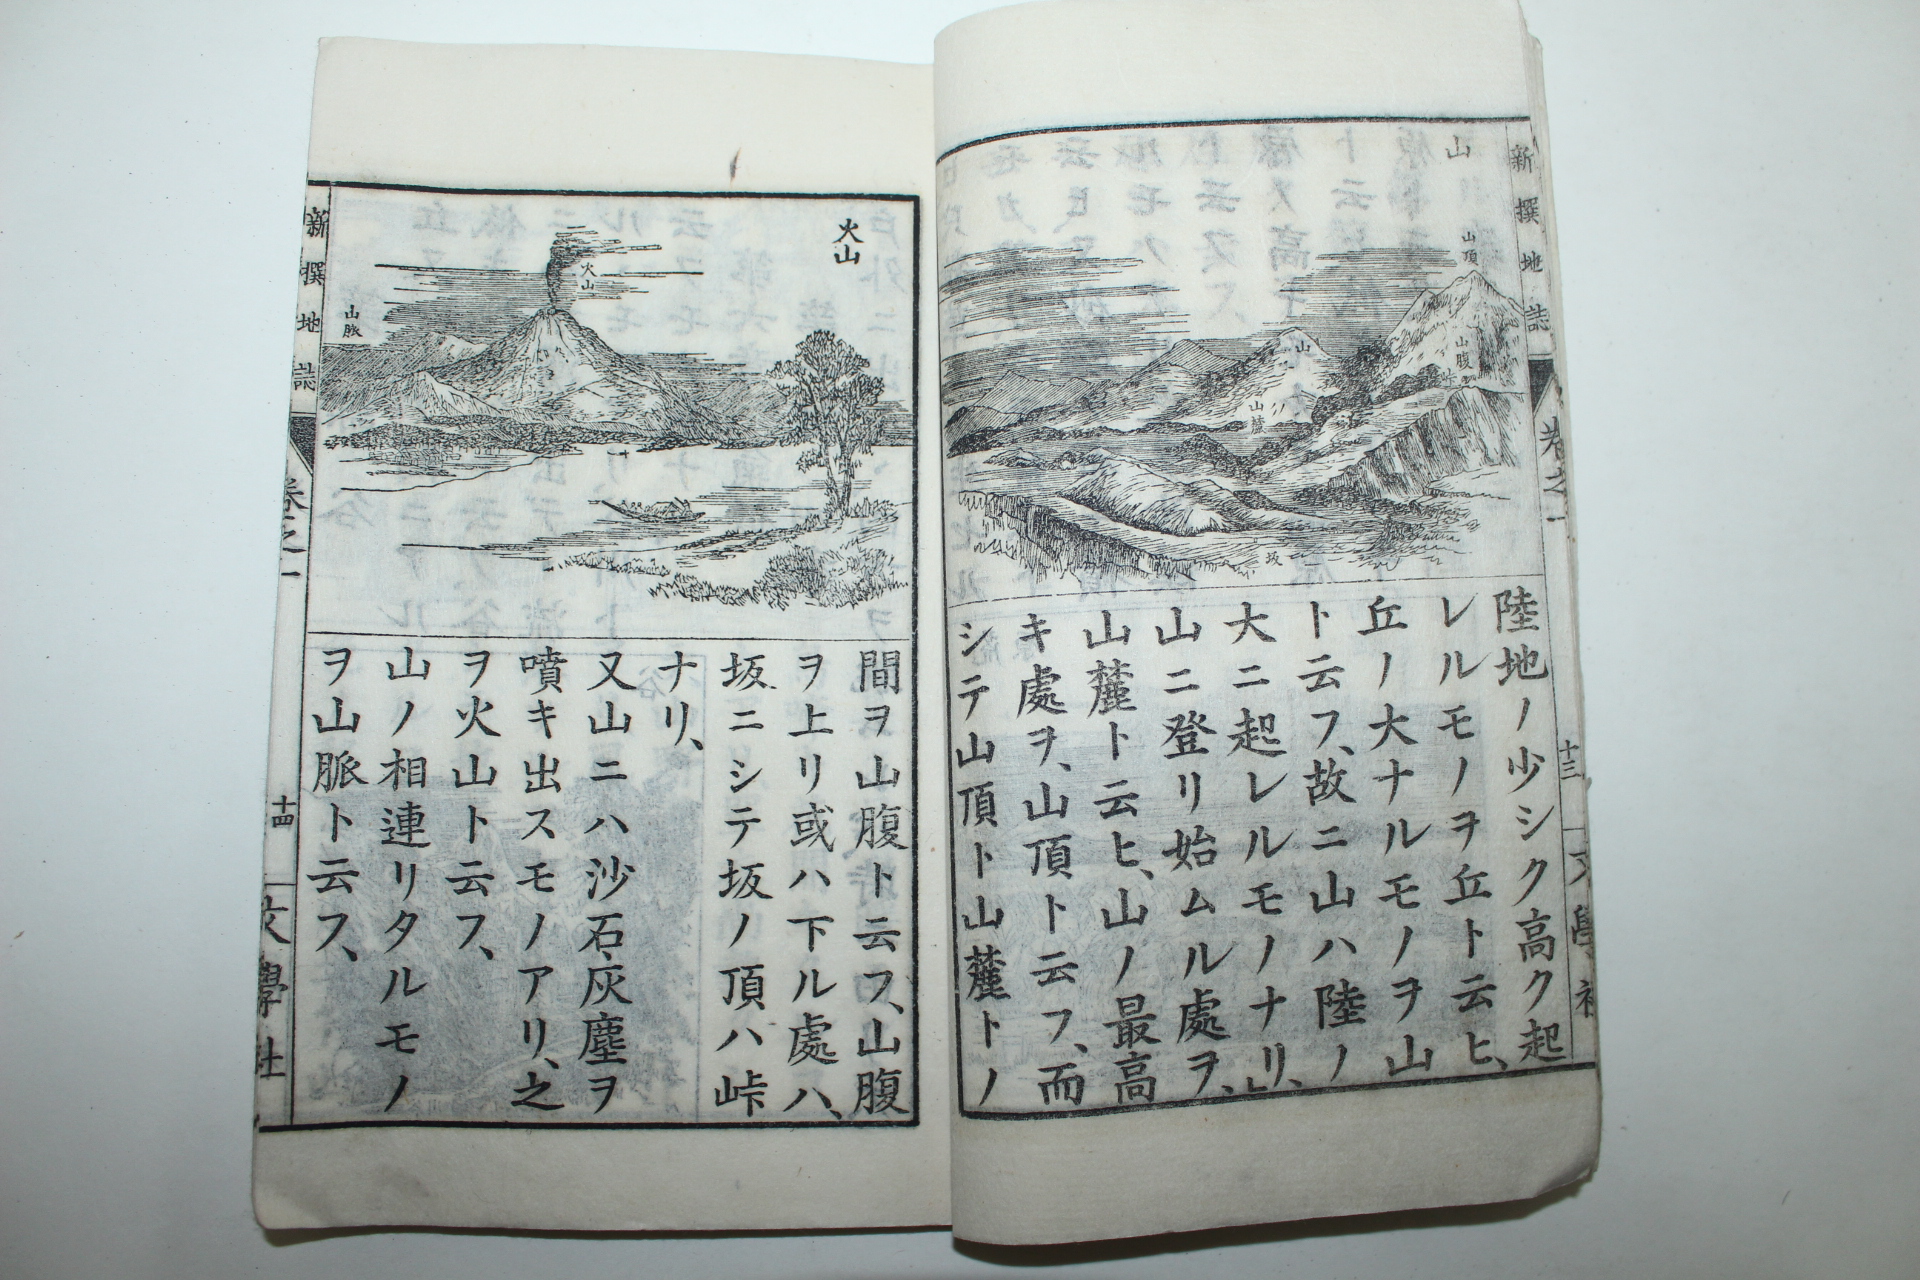 1887년(명치20년) 일본목판본 신선지지(新選地誌) 권1